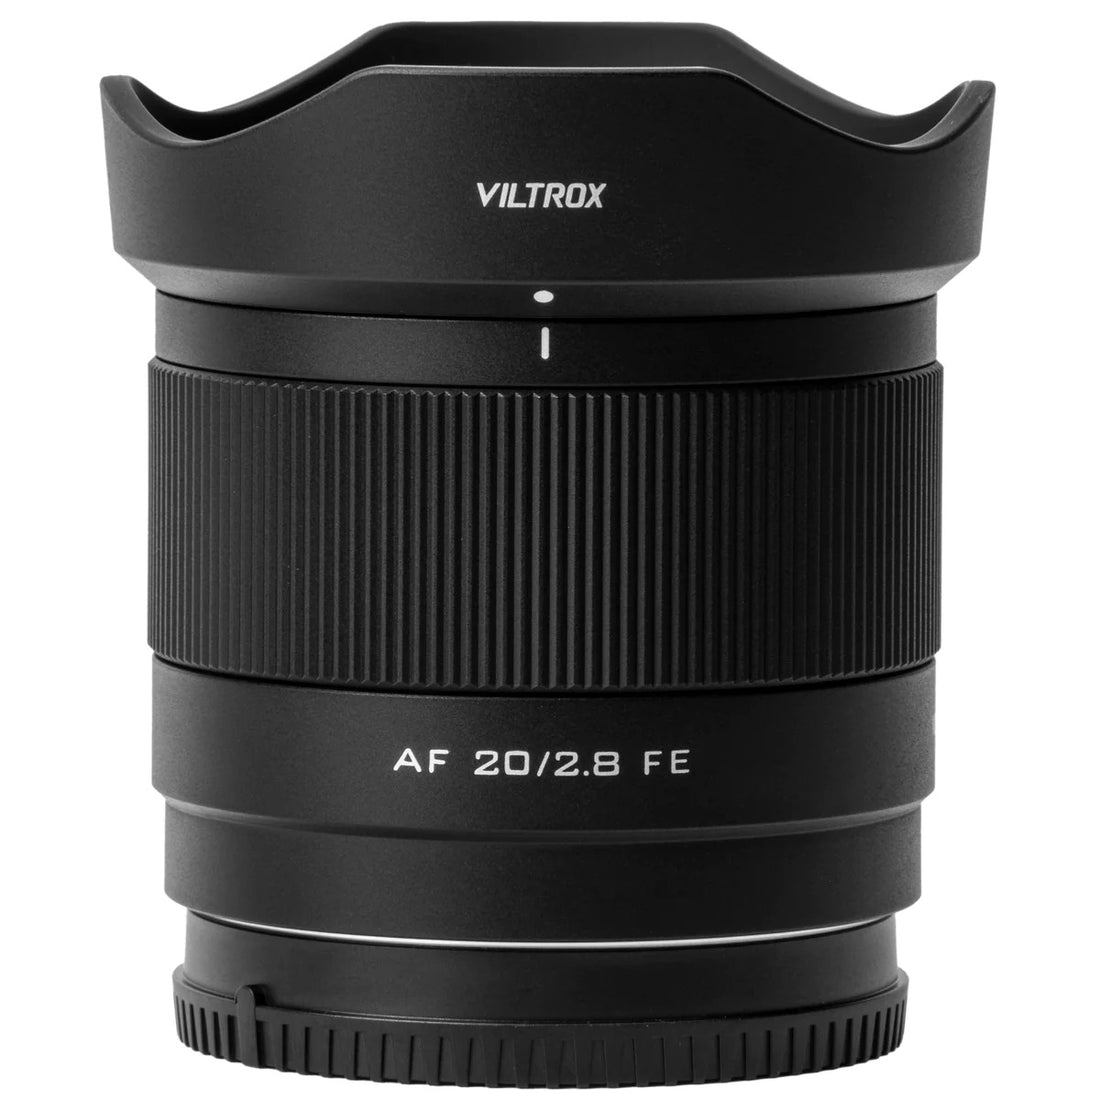 Viltrox AF 20mm f2.8FE Lens-Sony E-mount